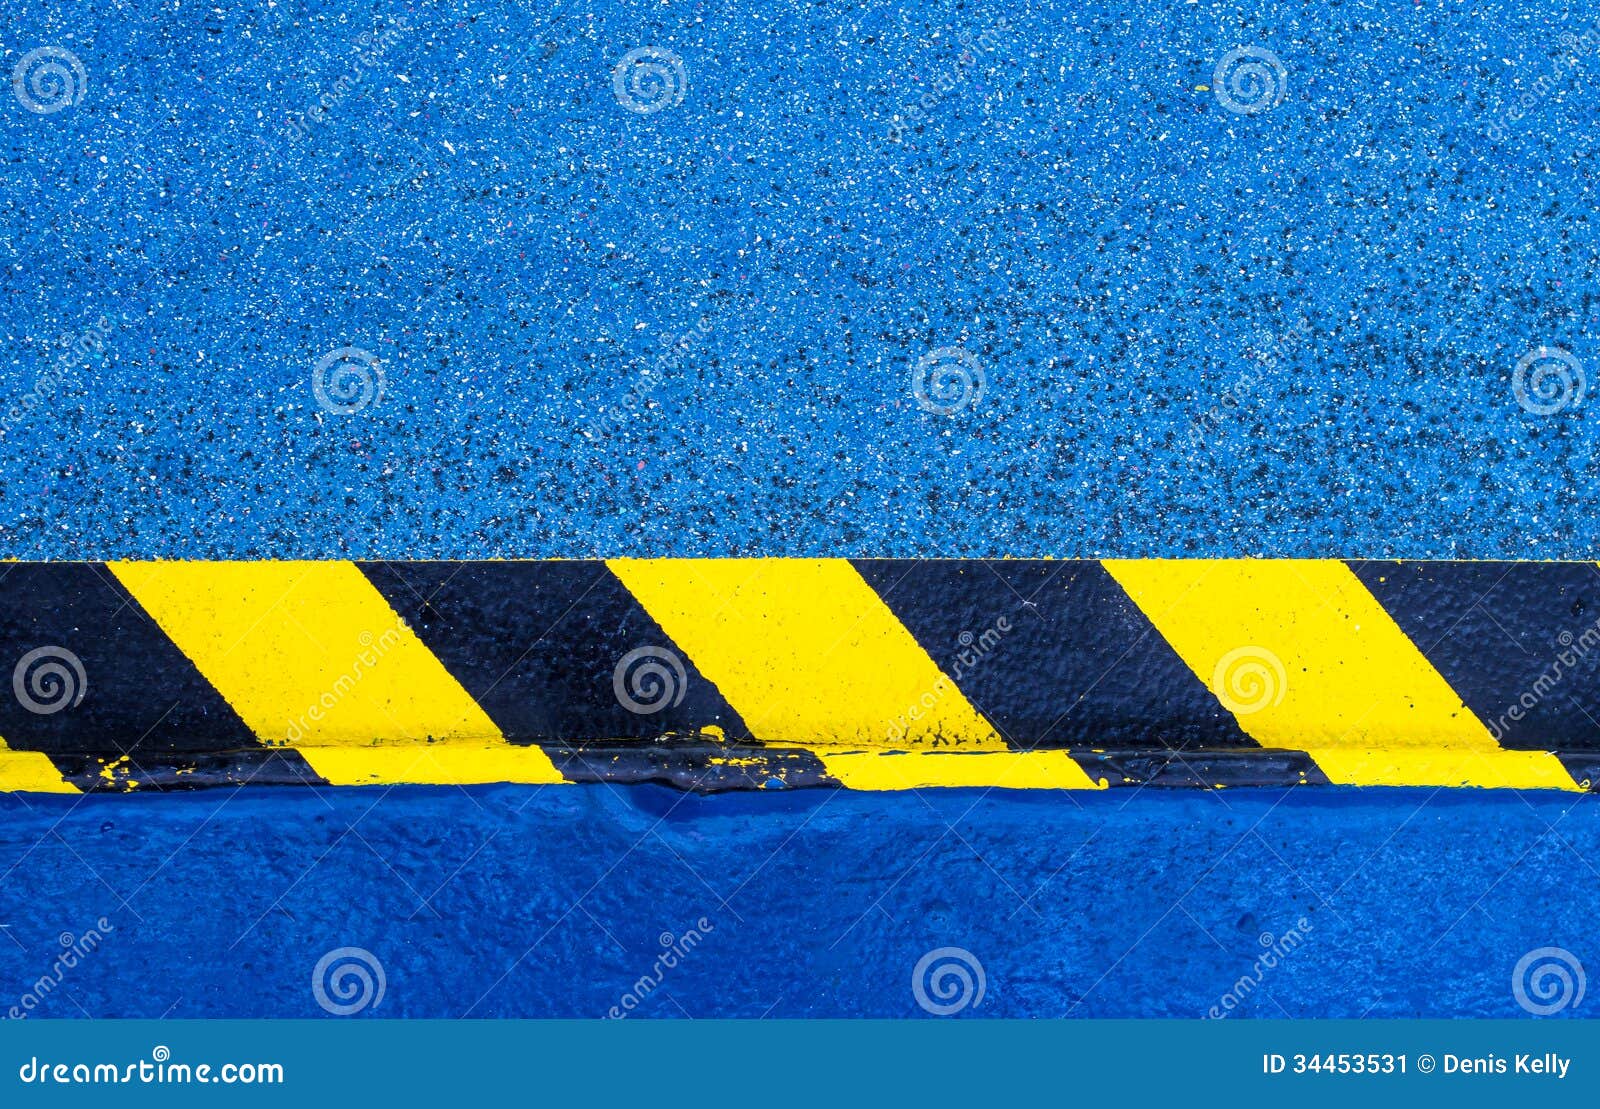 hazard warning paint on floor